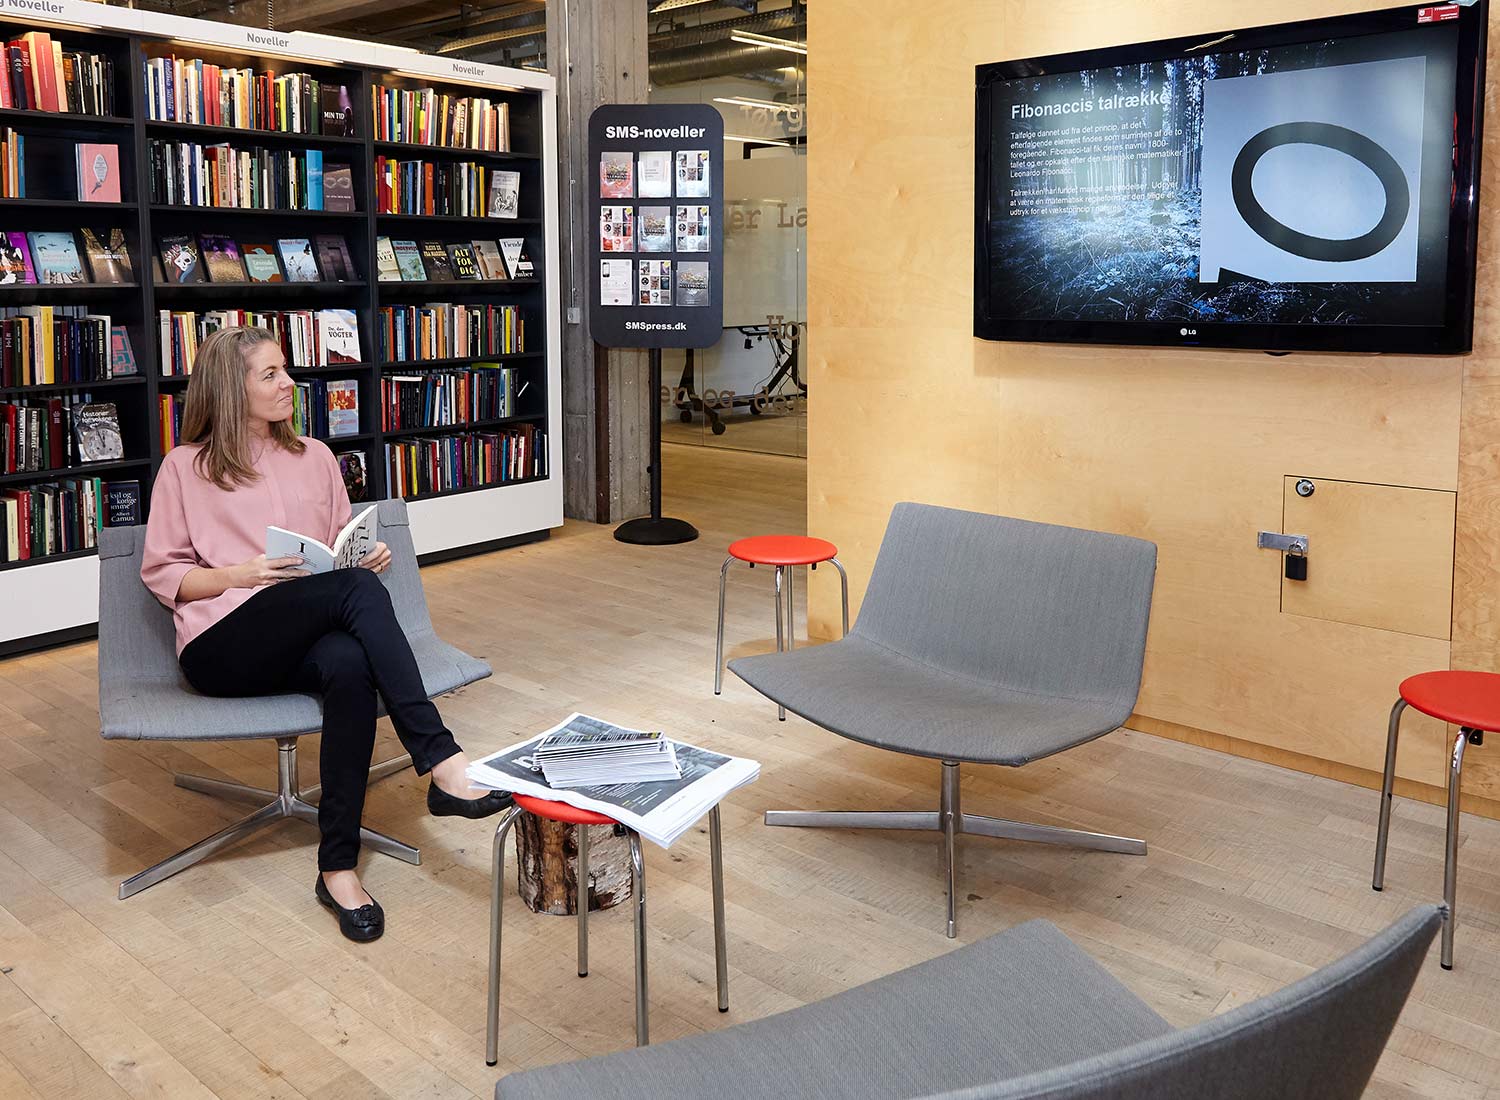 Mujer mirando a la pantalla digital de transformative en una biblioteca